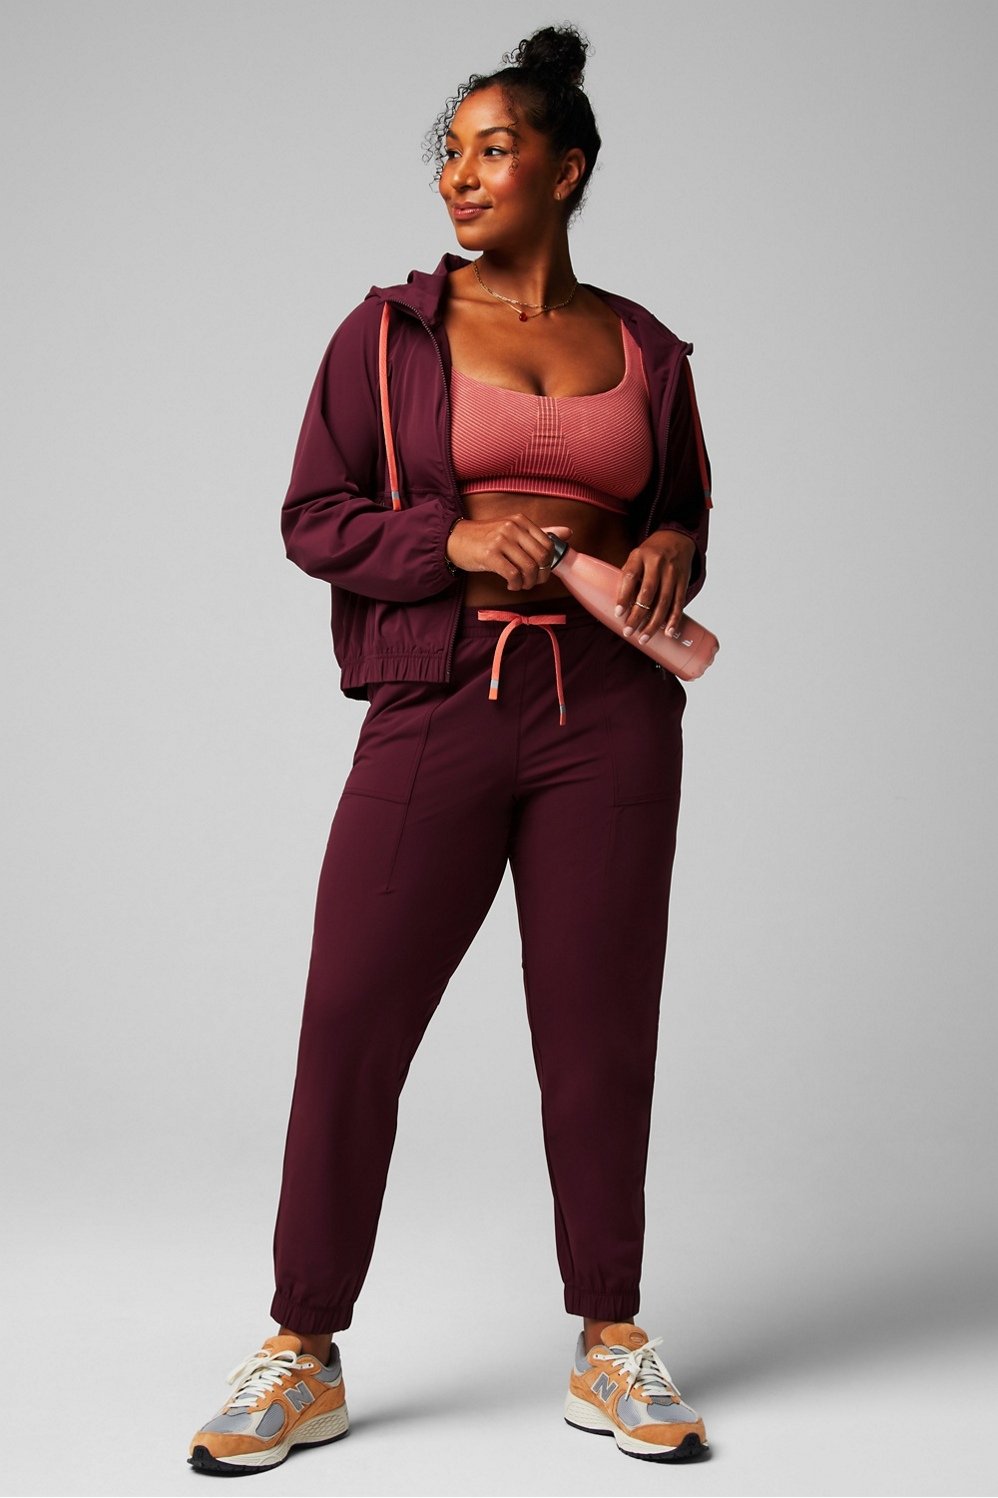 Terra & Sky Women's Plus Size Fleece Sweatpants, 2-Pack 